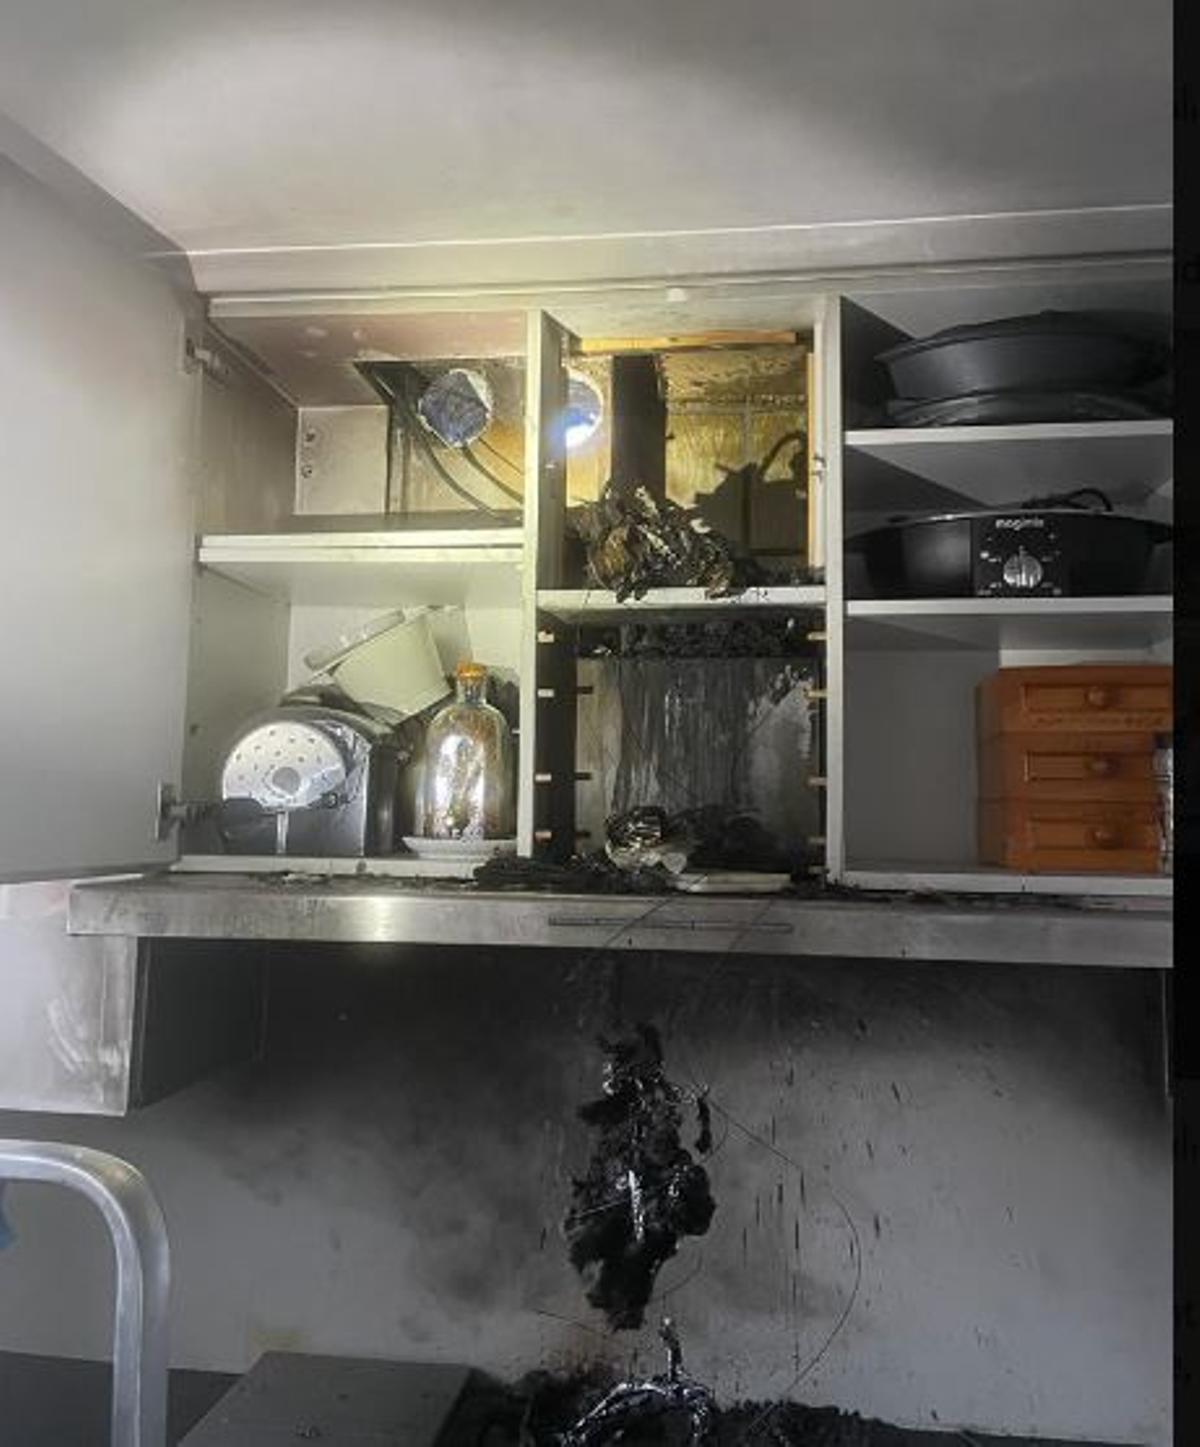 Los bomberos han inspeccionado la cocina para evitr riesgos